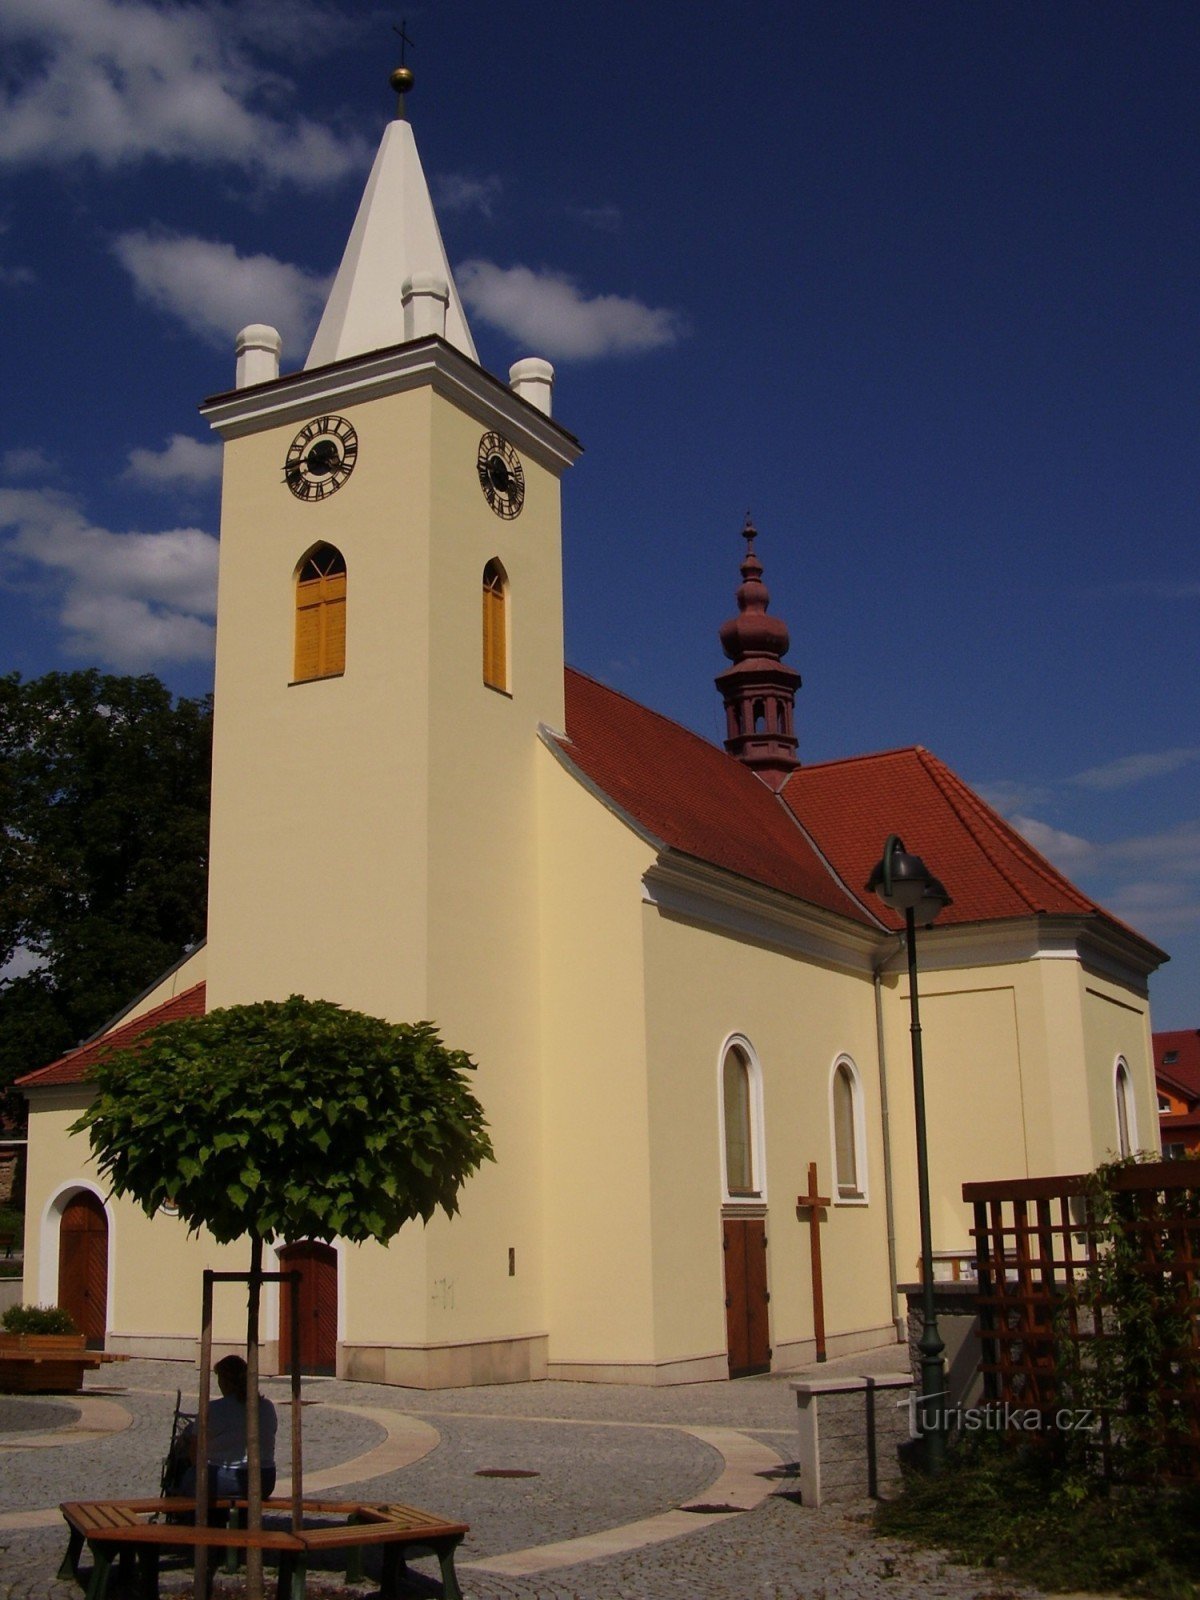 kirken St. Vavřine i Brno - Řečkovice (kunstnerisk udsmykning) og dens omgivelser